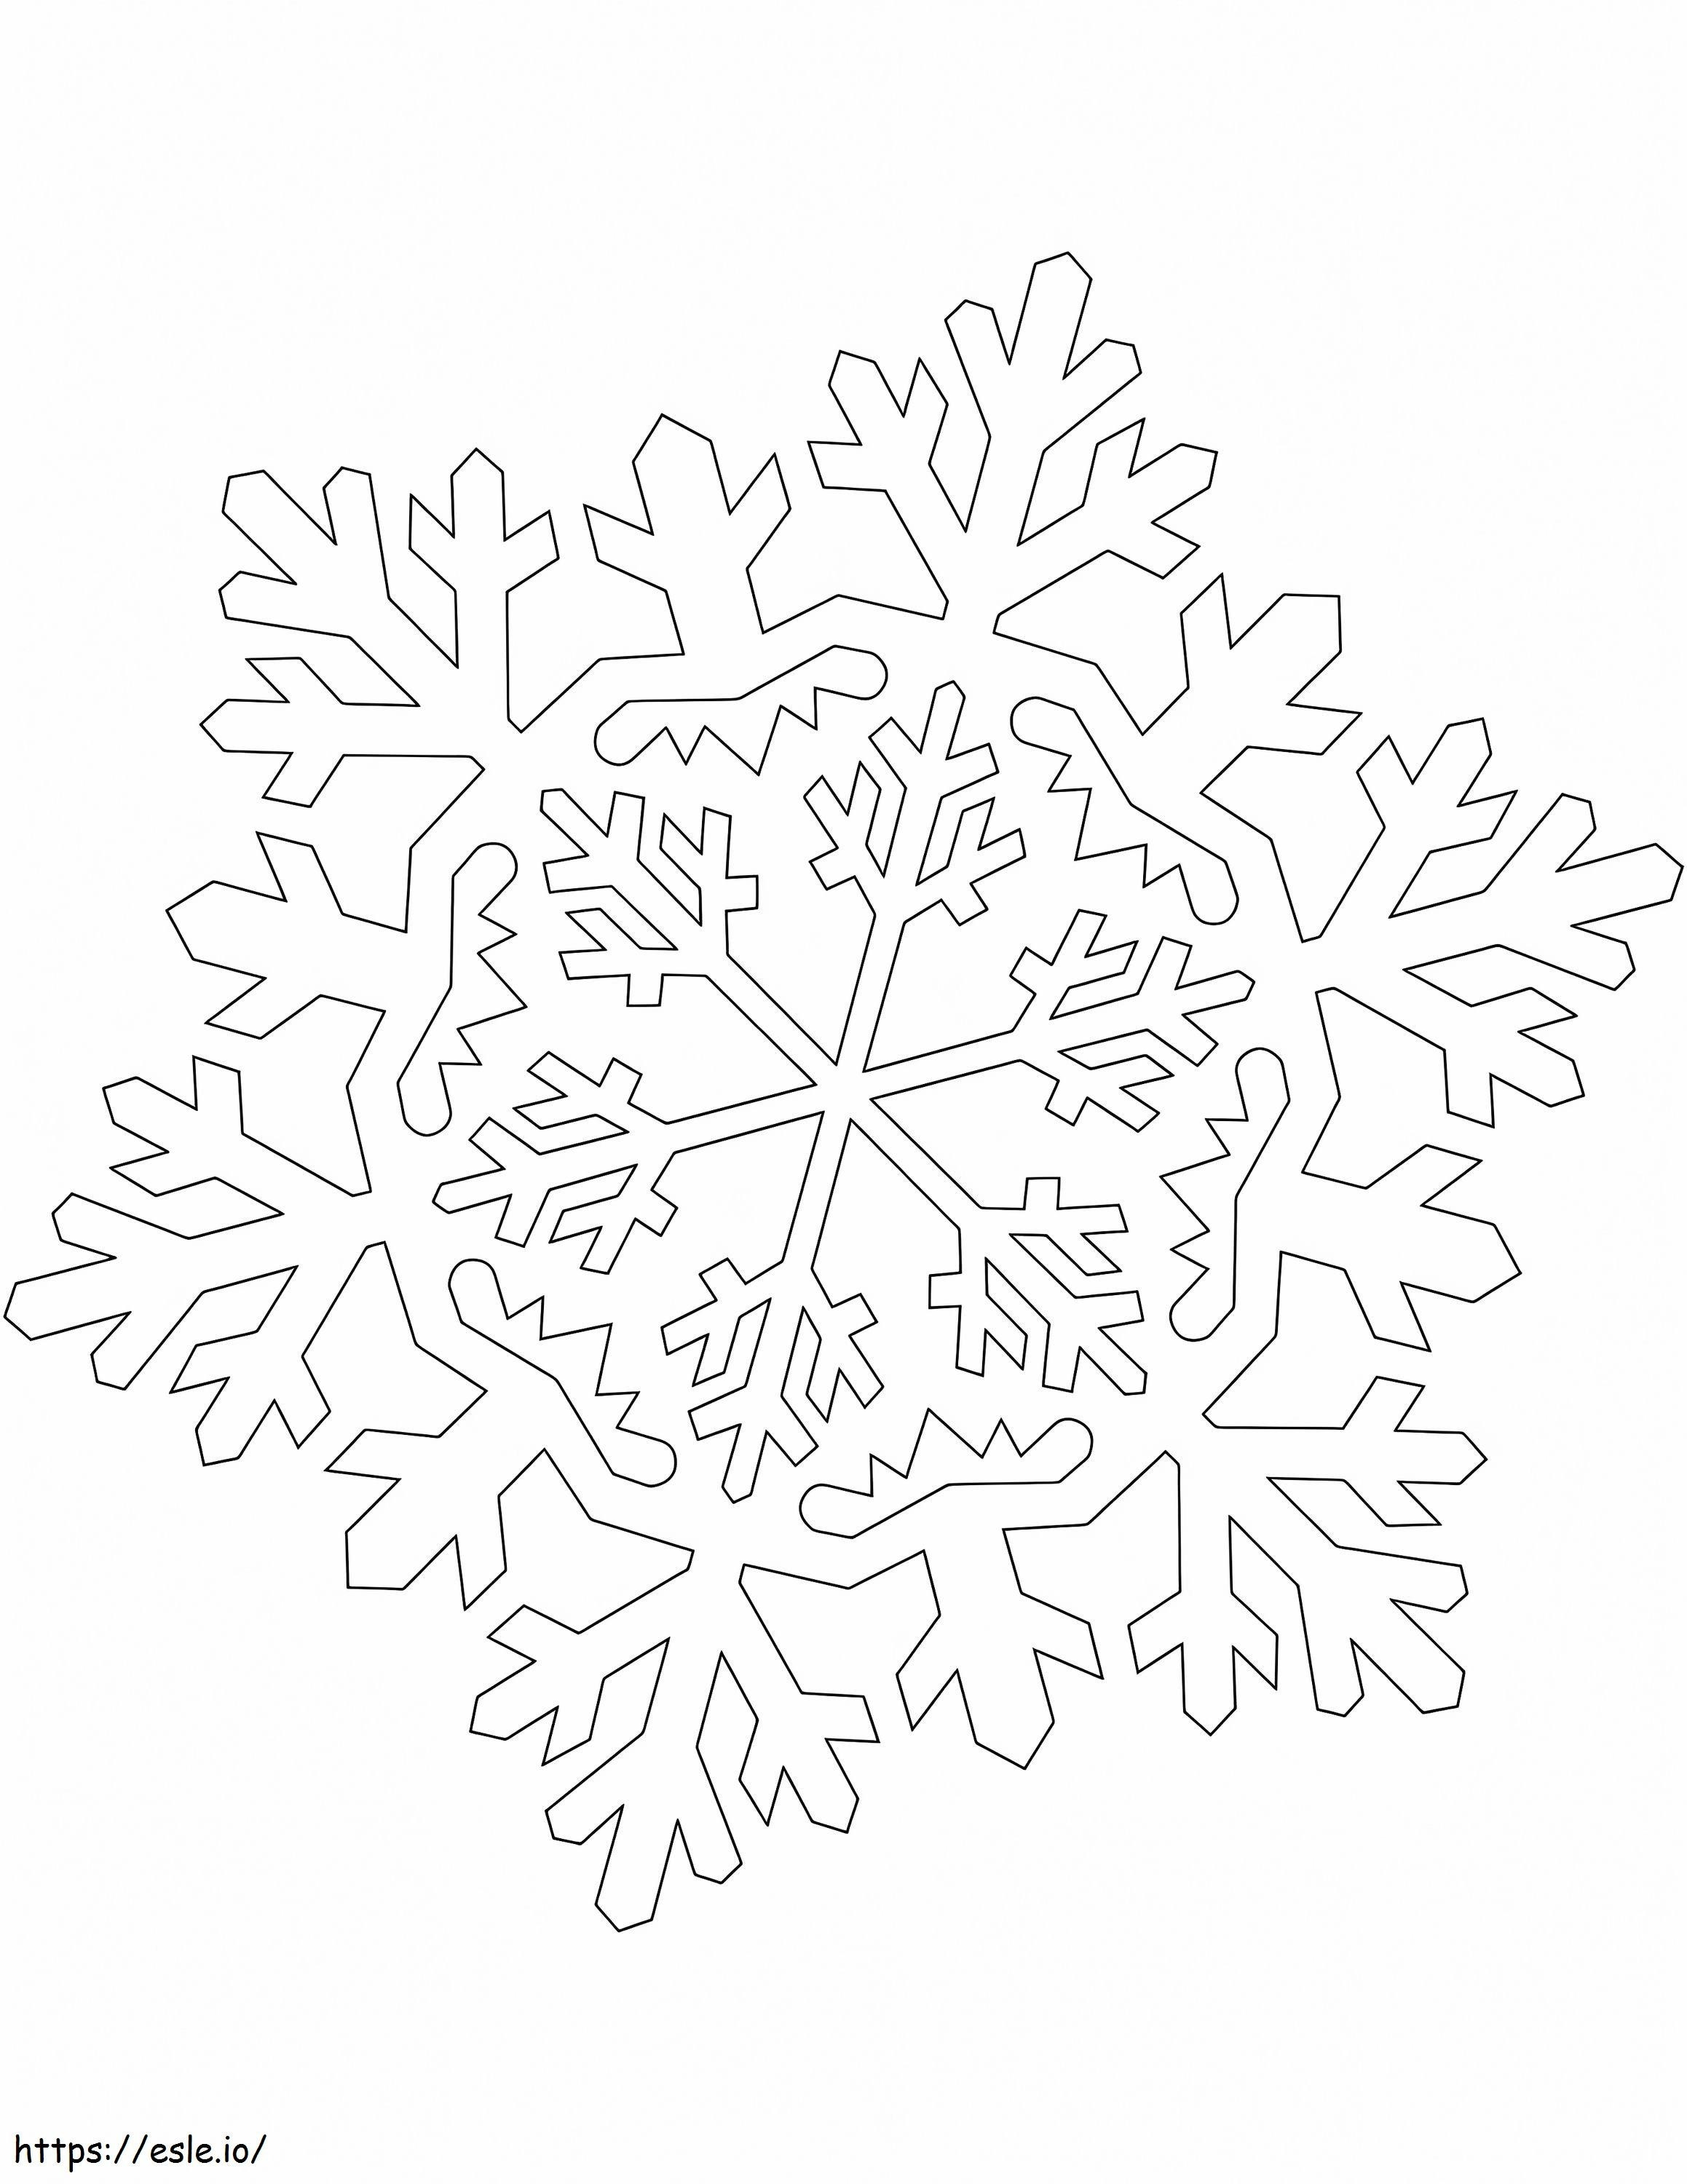 1584003633 Fiocco di neve nell'ornamento del fiocco di neve da colorare